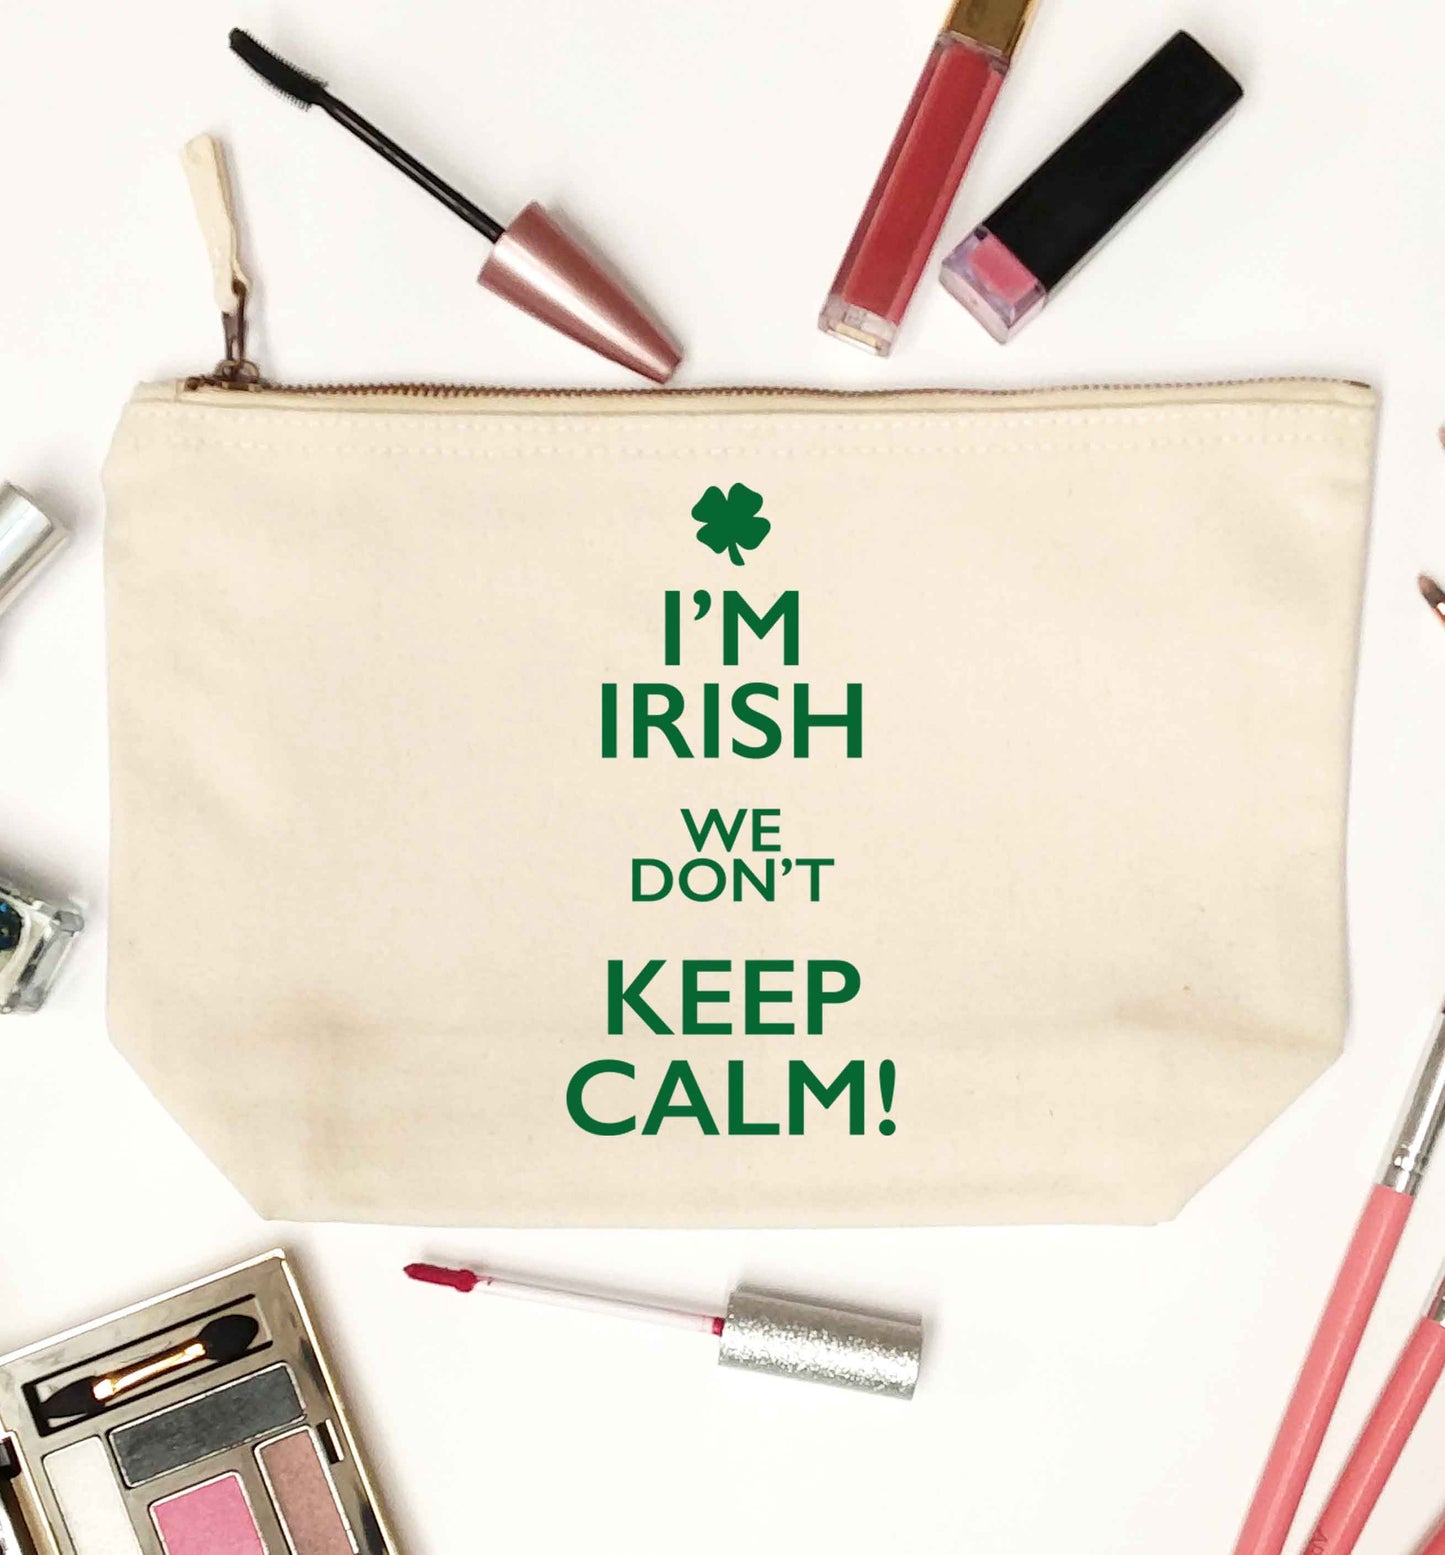 I'm Irish we don't keep calm natural makeup bag